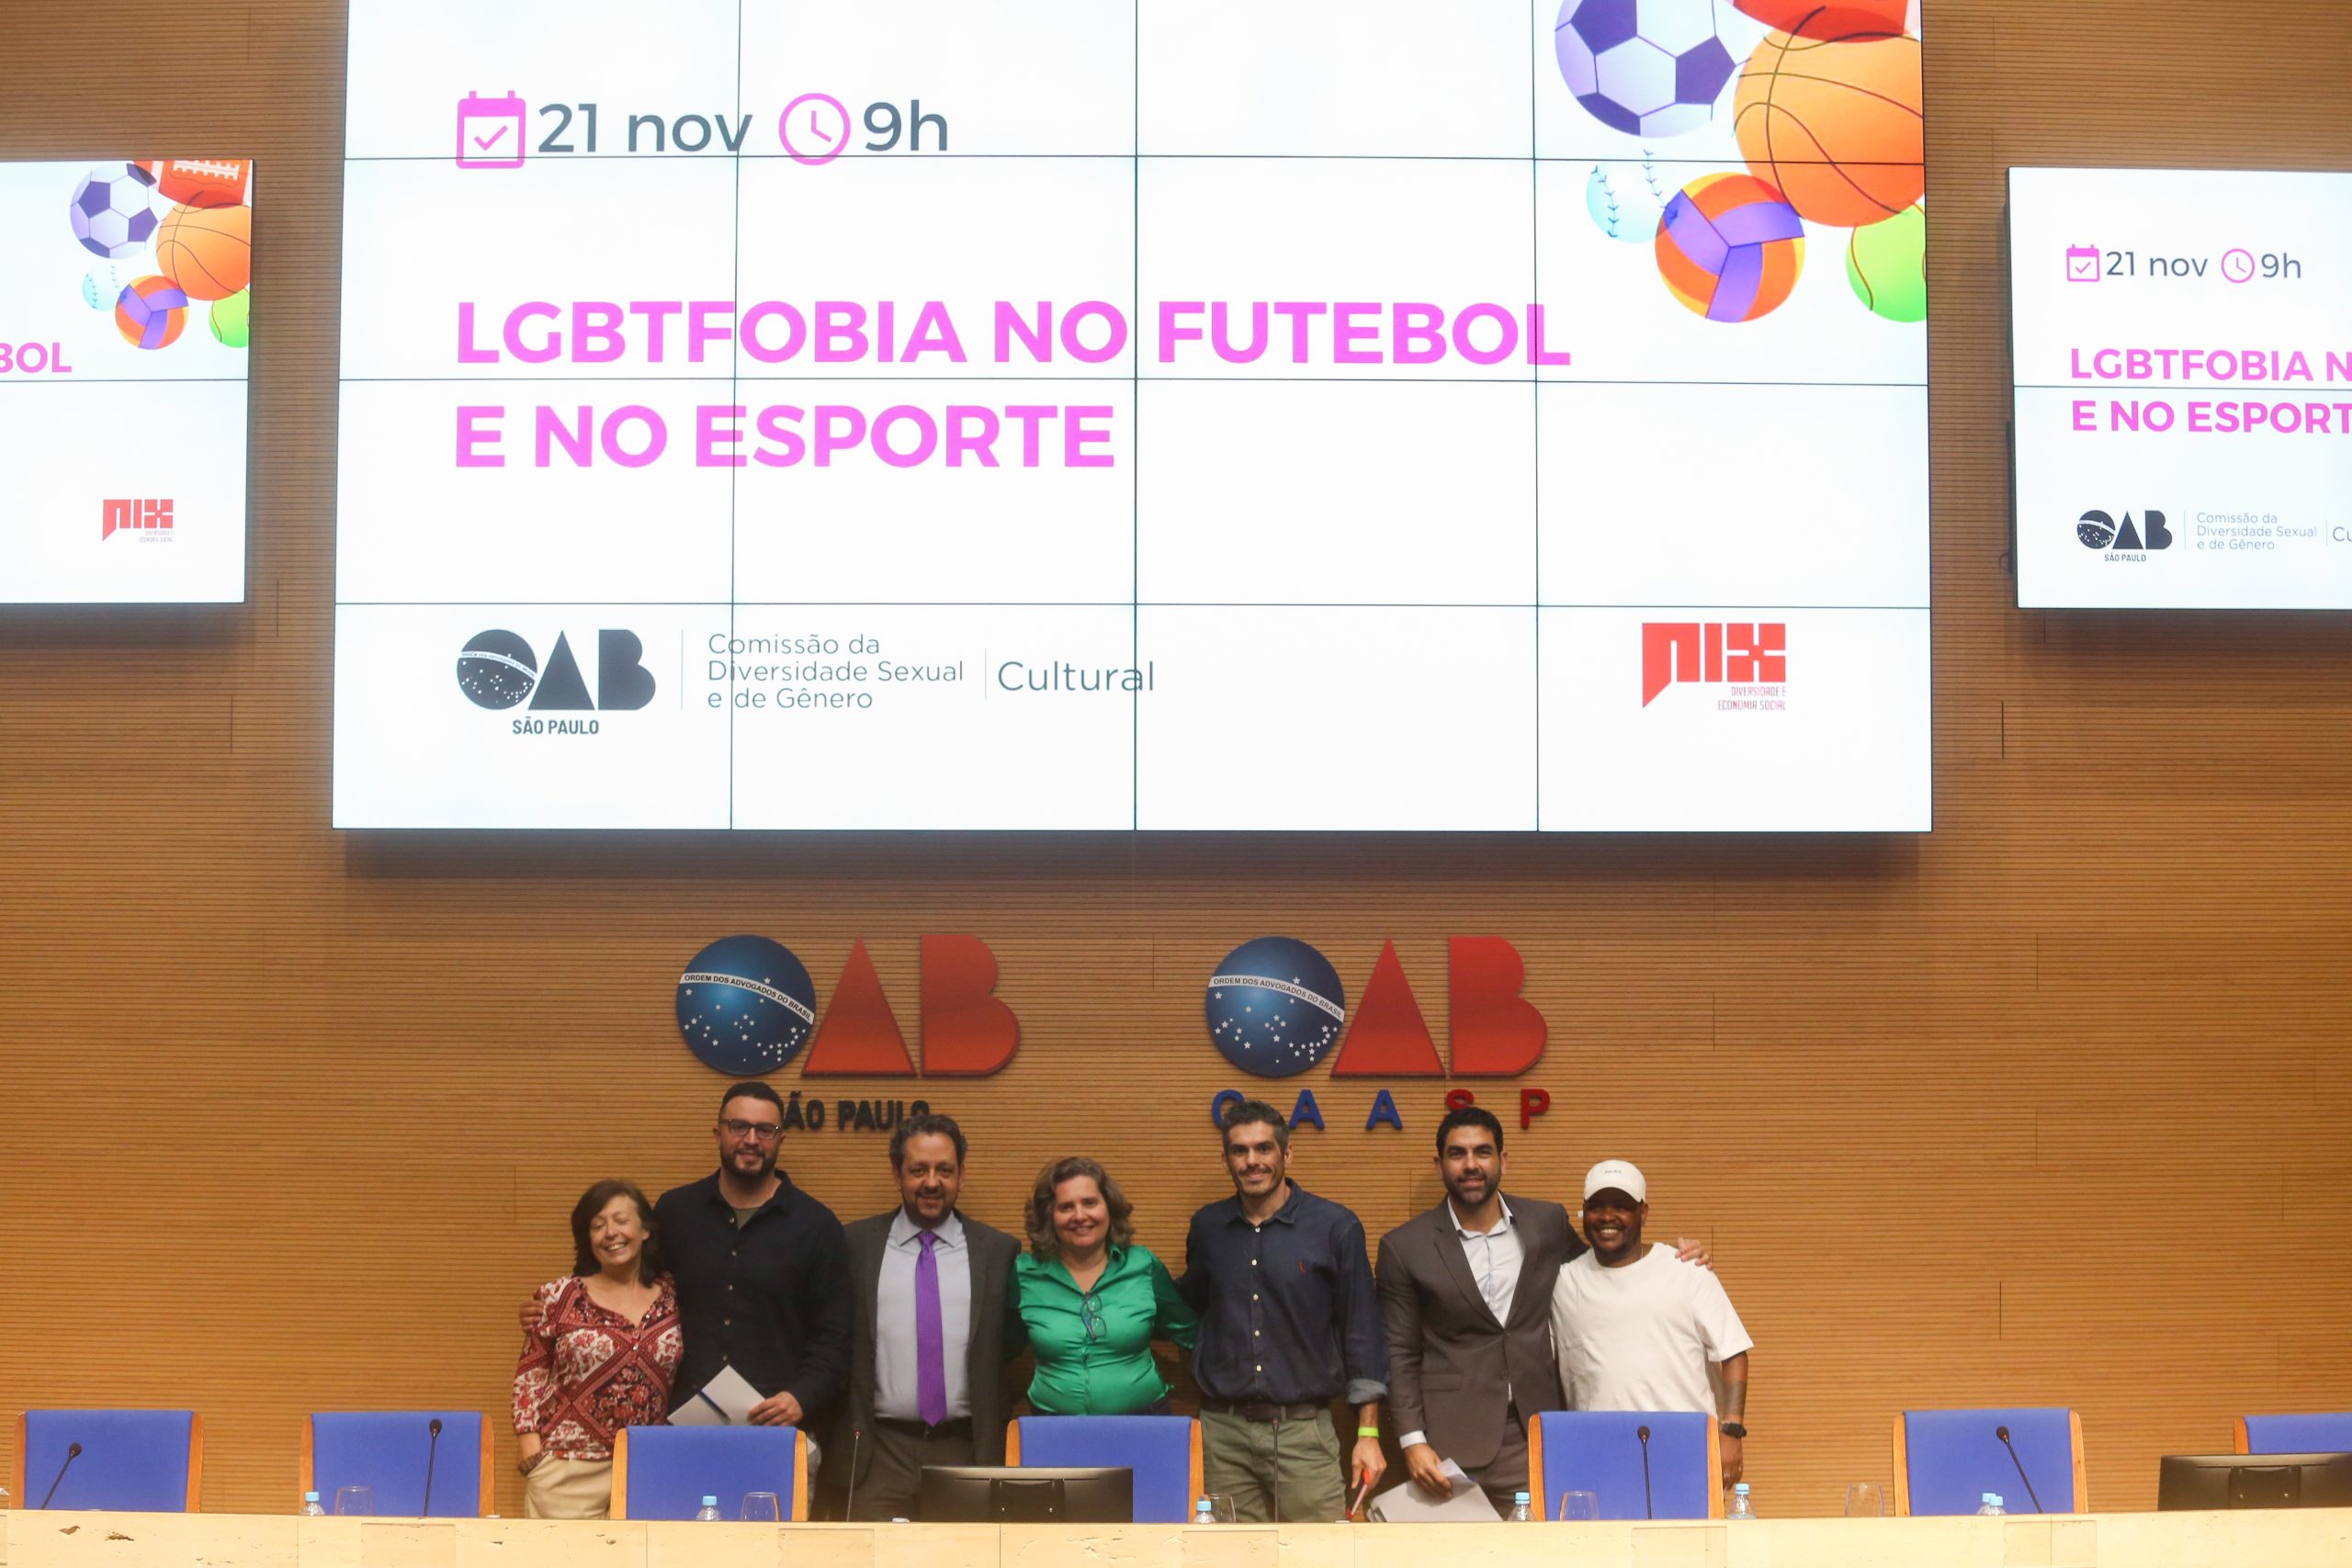 Comissão de Diversidade Sexual da OAB SP promove evento sobre LGBTfobia no futebol e nos esportes